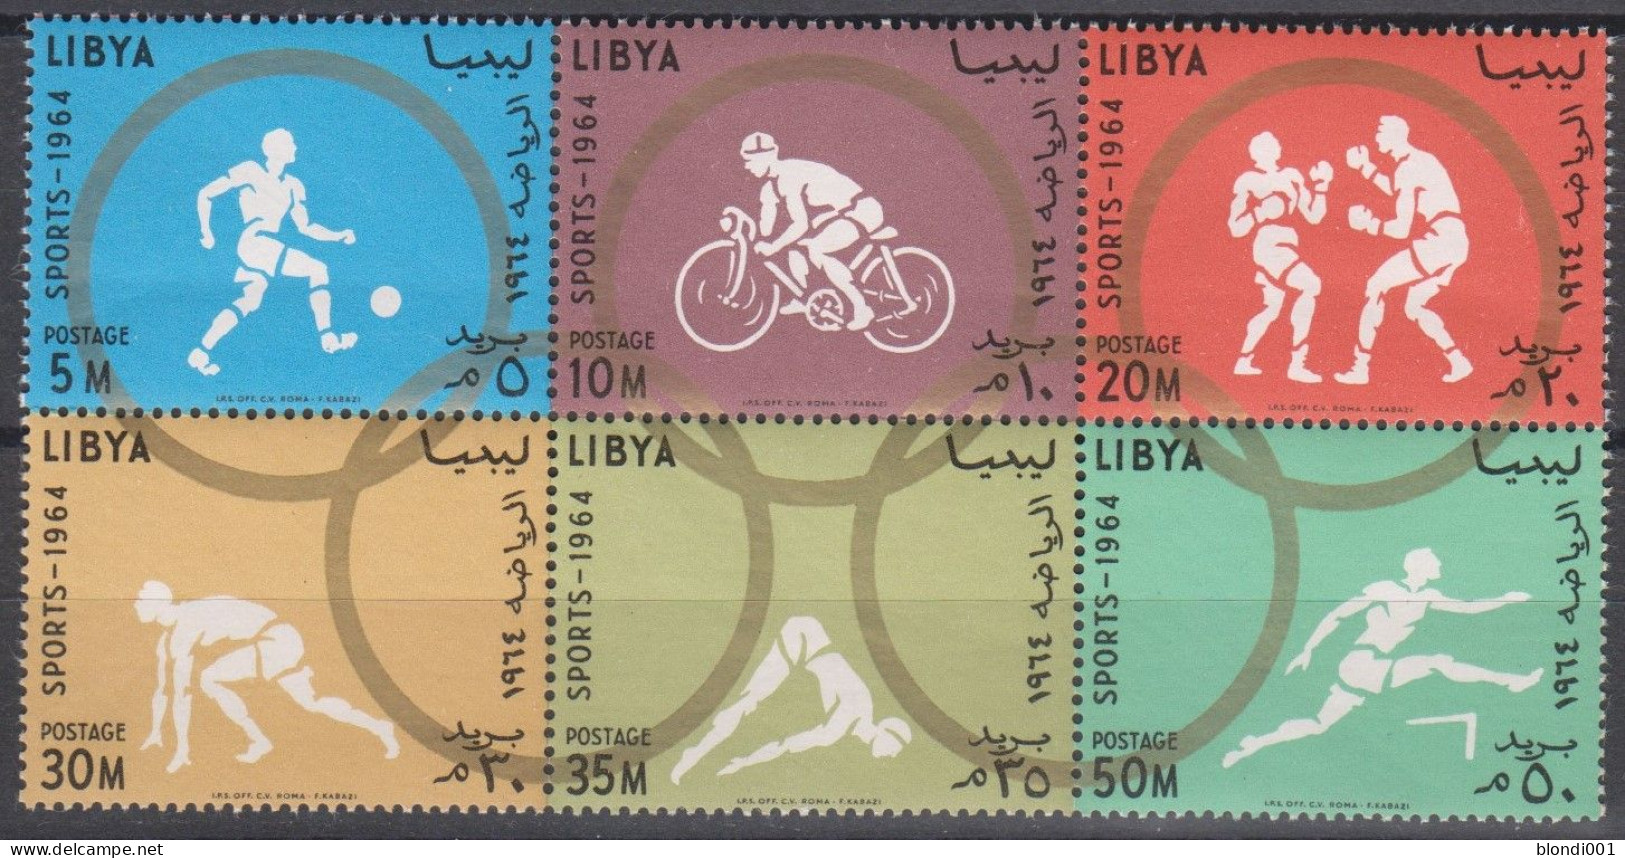 Olympic 1964 - Cycling - LIBYA - Set 6v MNH - Ete 2008: Pékin